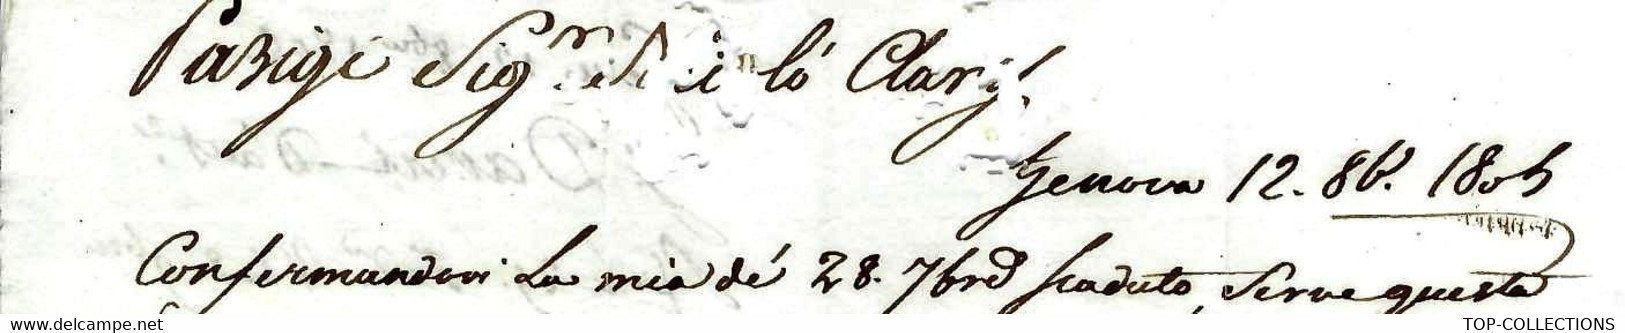 De Gènes Genova 1805 LETTRE Signée Pour Nicolas Clary Banque Famille De Joseph Bonaparte  Paris - Italy